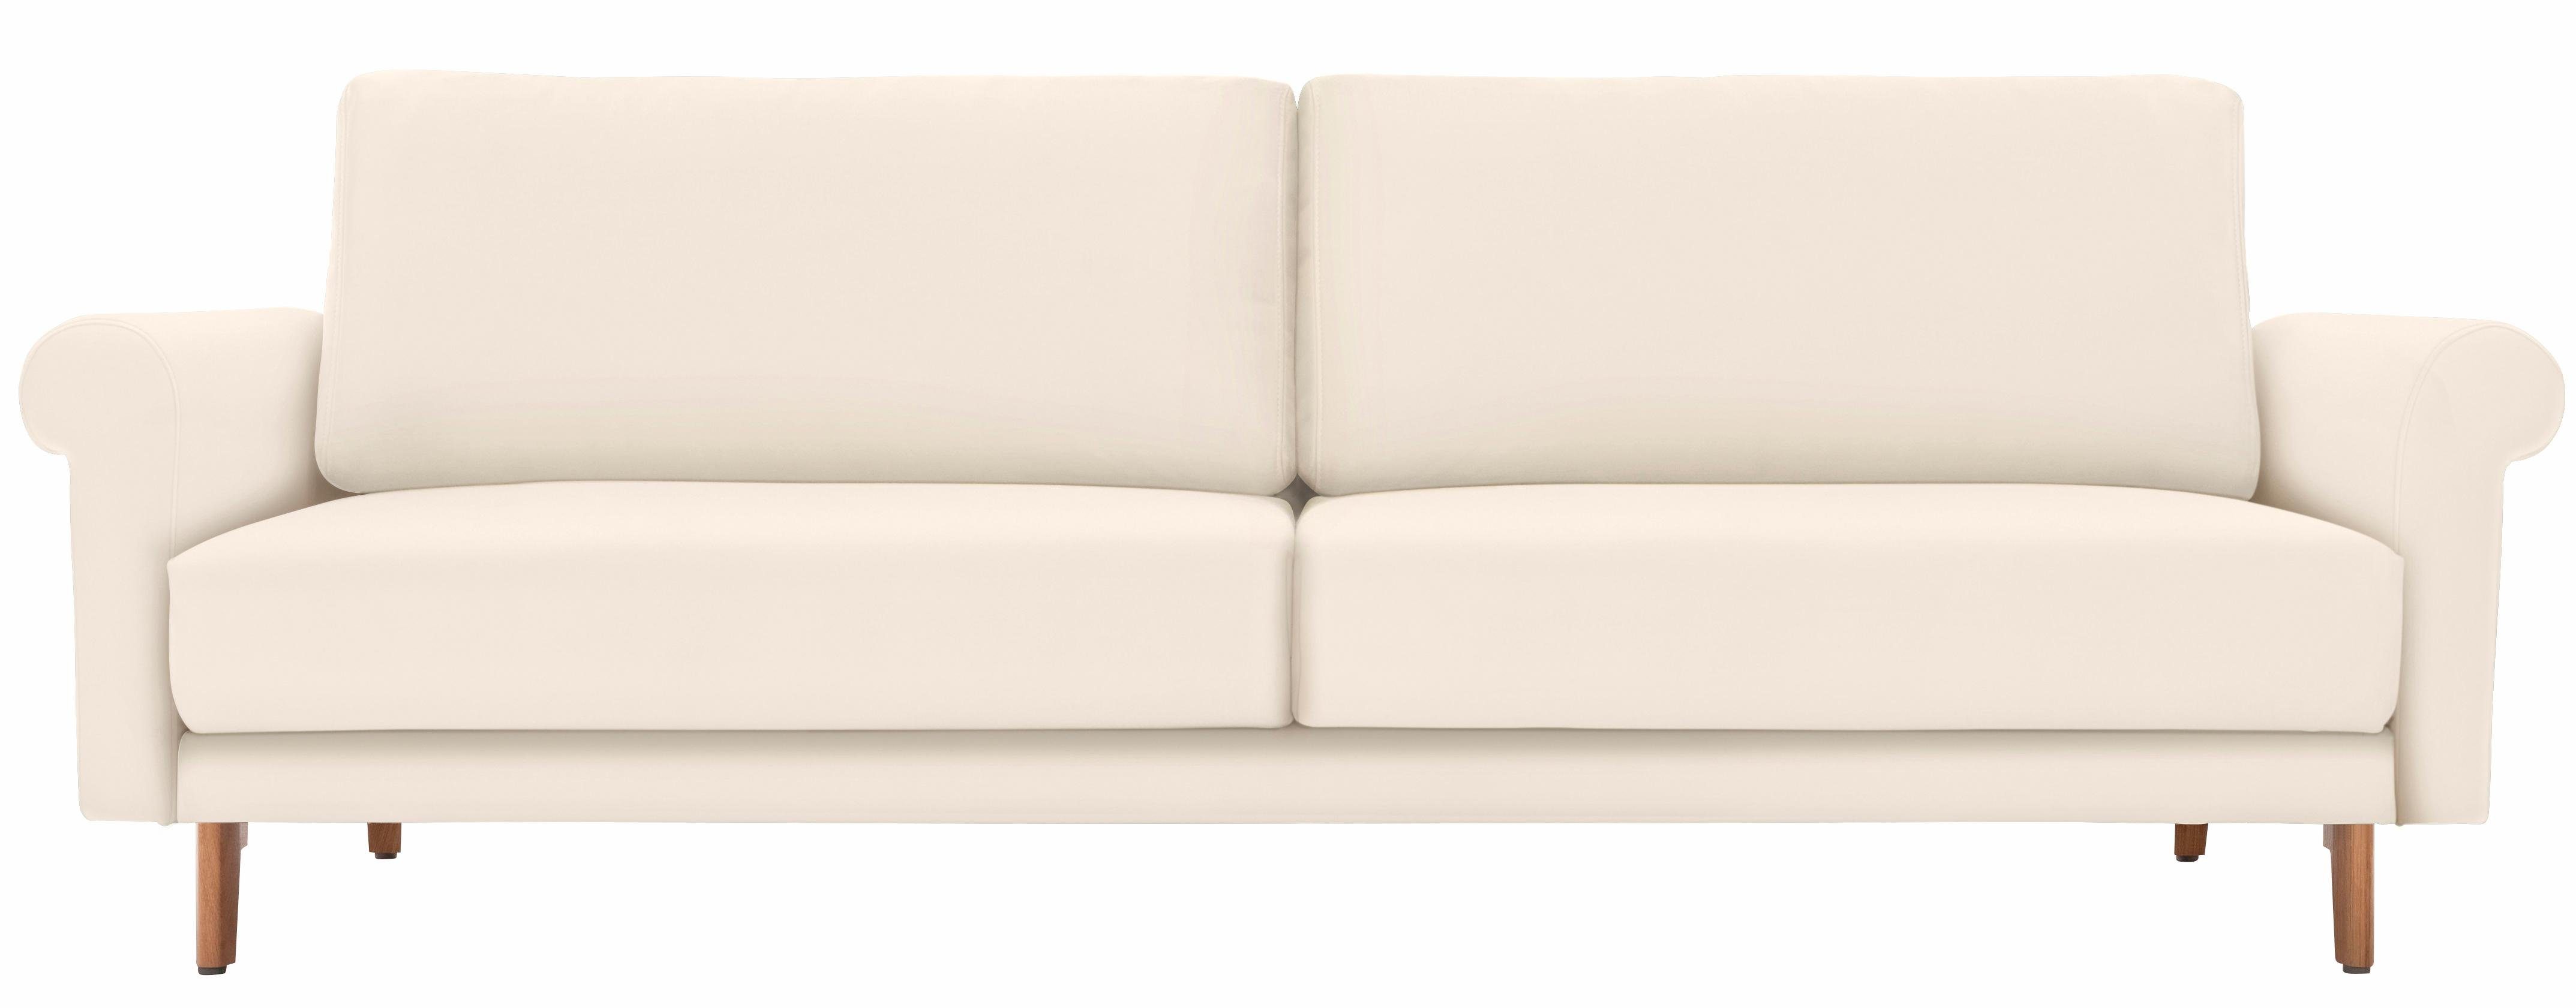 hülsta sofa 2-Sitzer hs.450, modern Landhaus, Füße in Nussbaum, Breite 168 cm | Einzelsofas